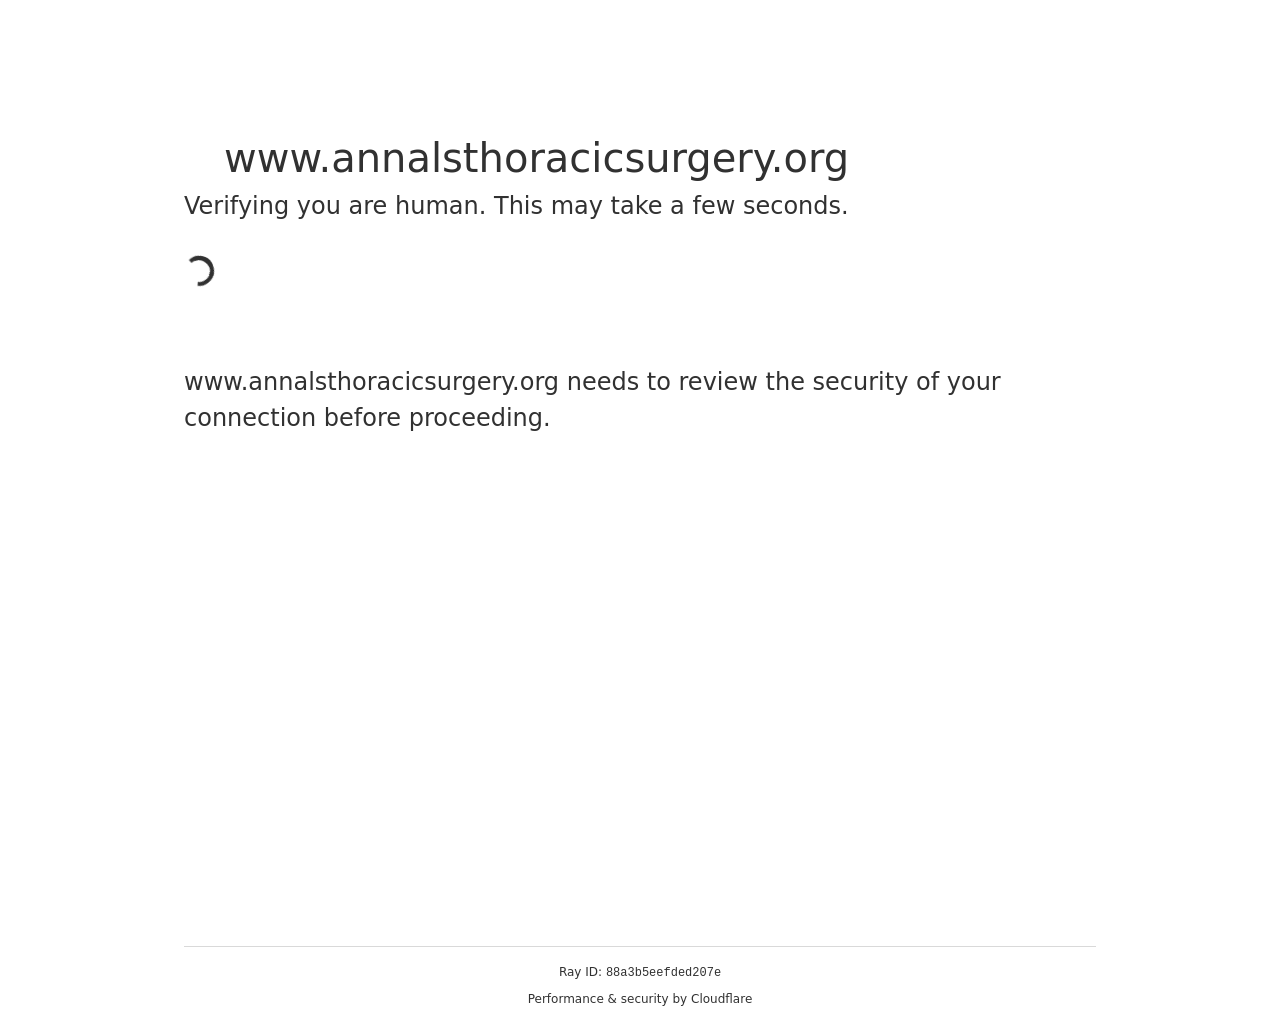 annalsthoracicsurgery.org